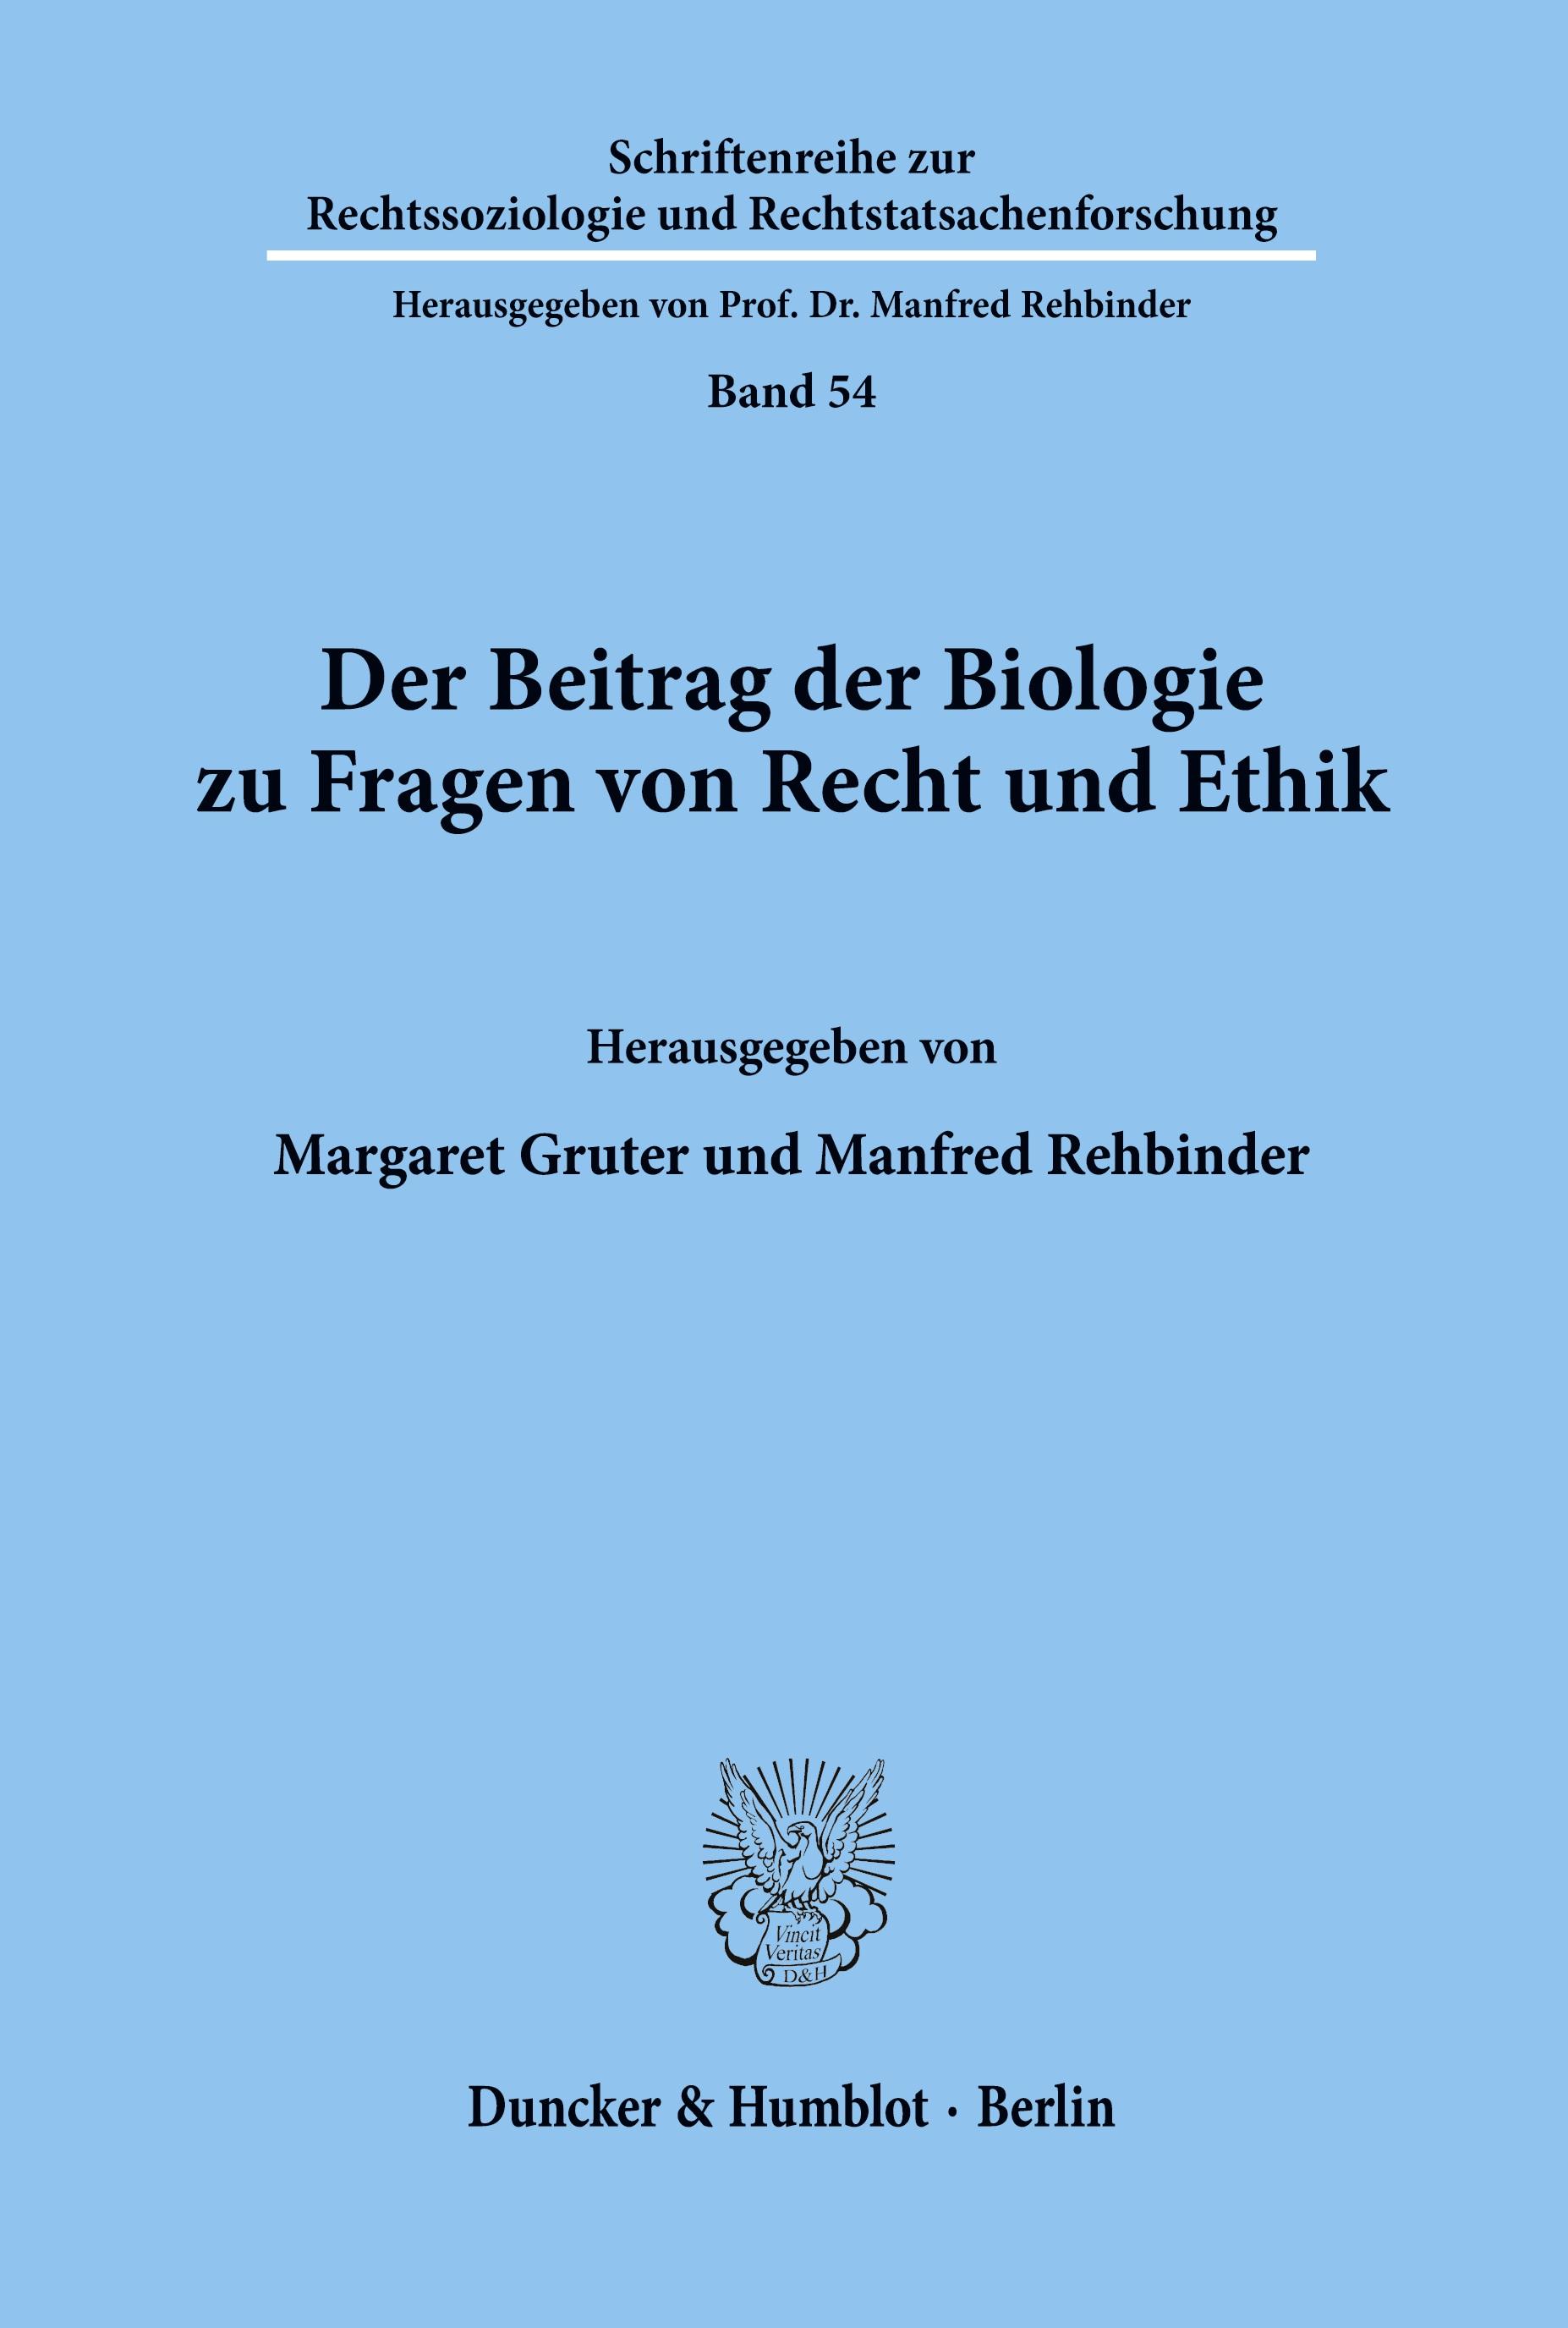 Der Beitrag der Biologie zu Fragen von Recht und Ethik. - Gruter, Margaret|Rehbinder, Manfred